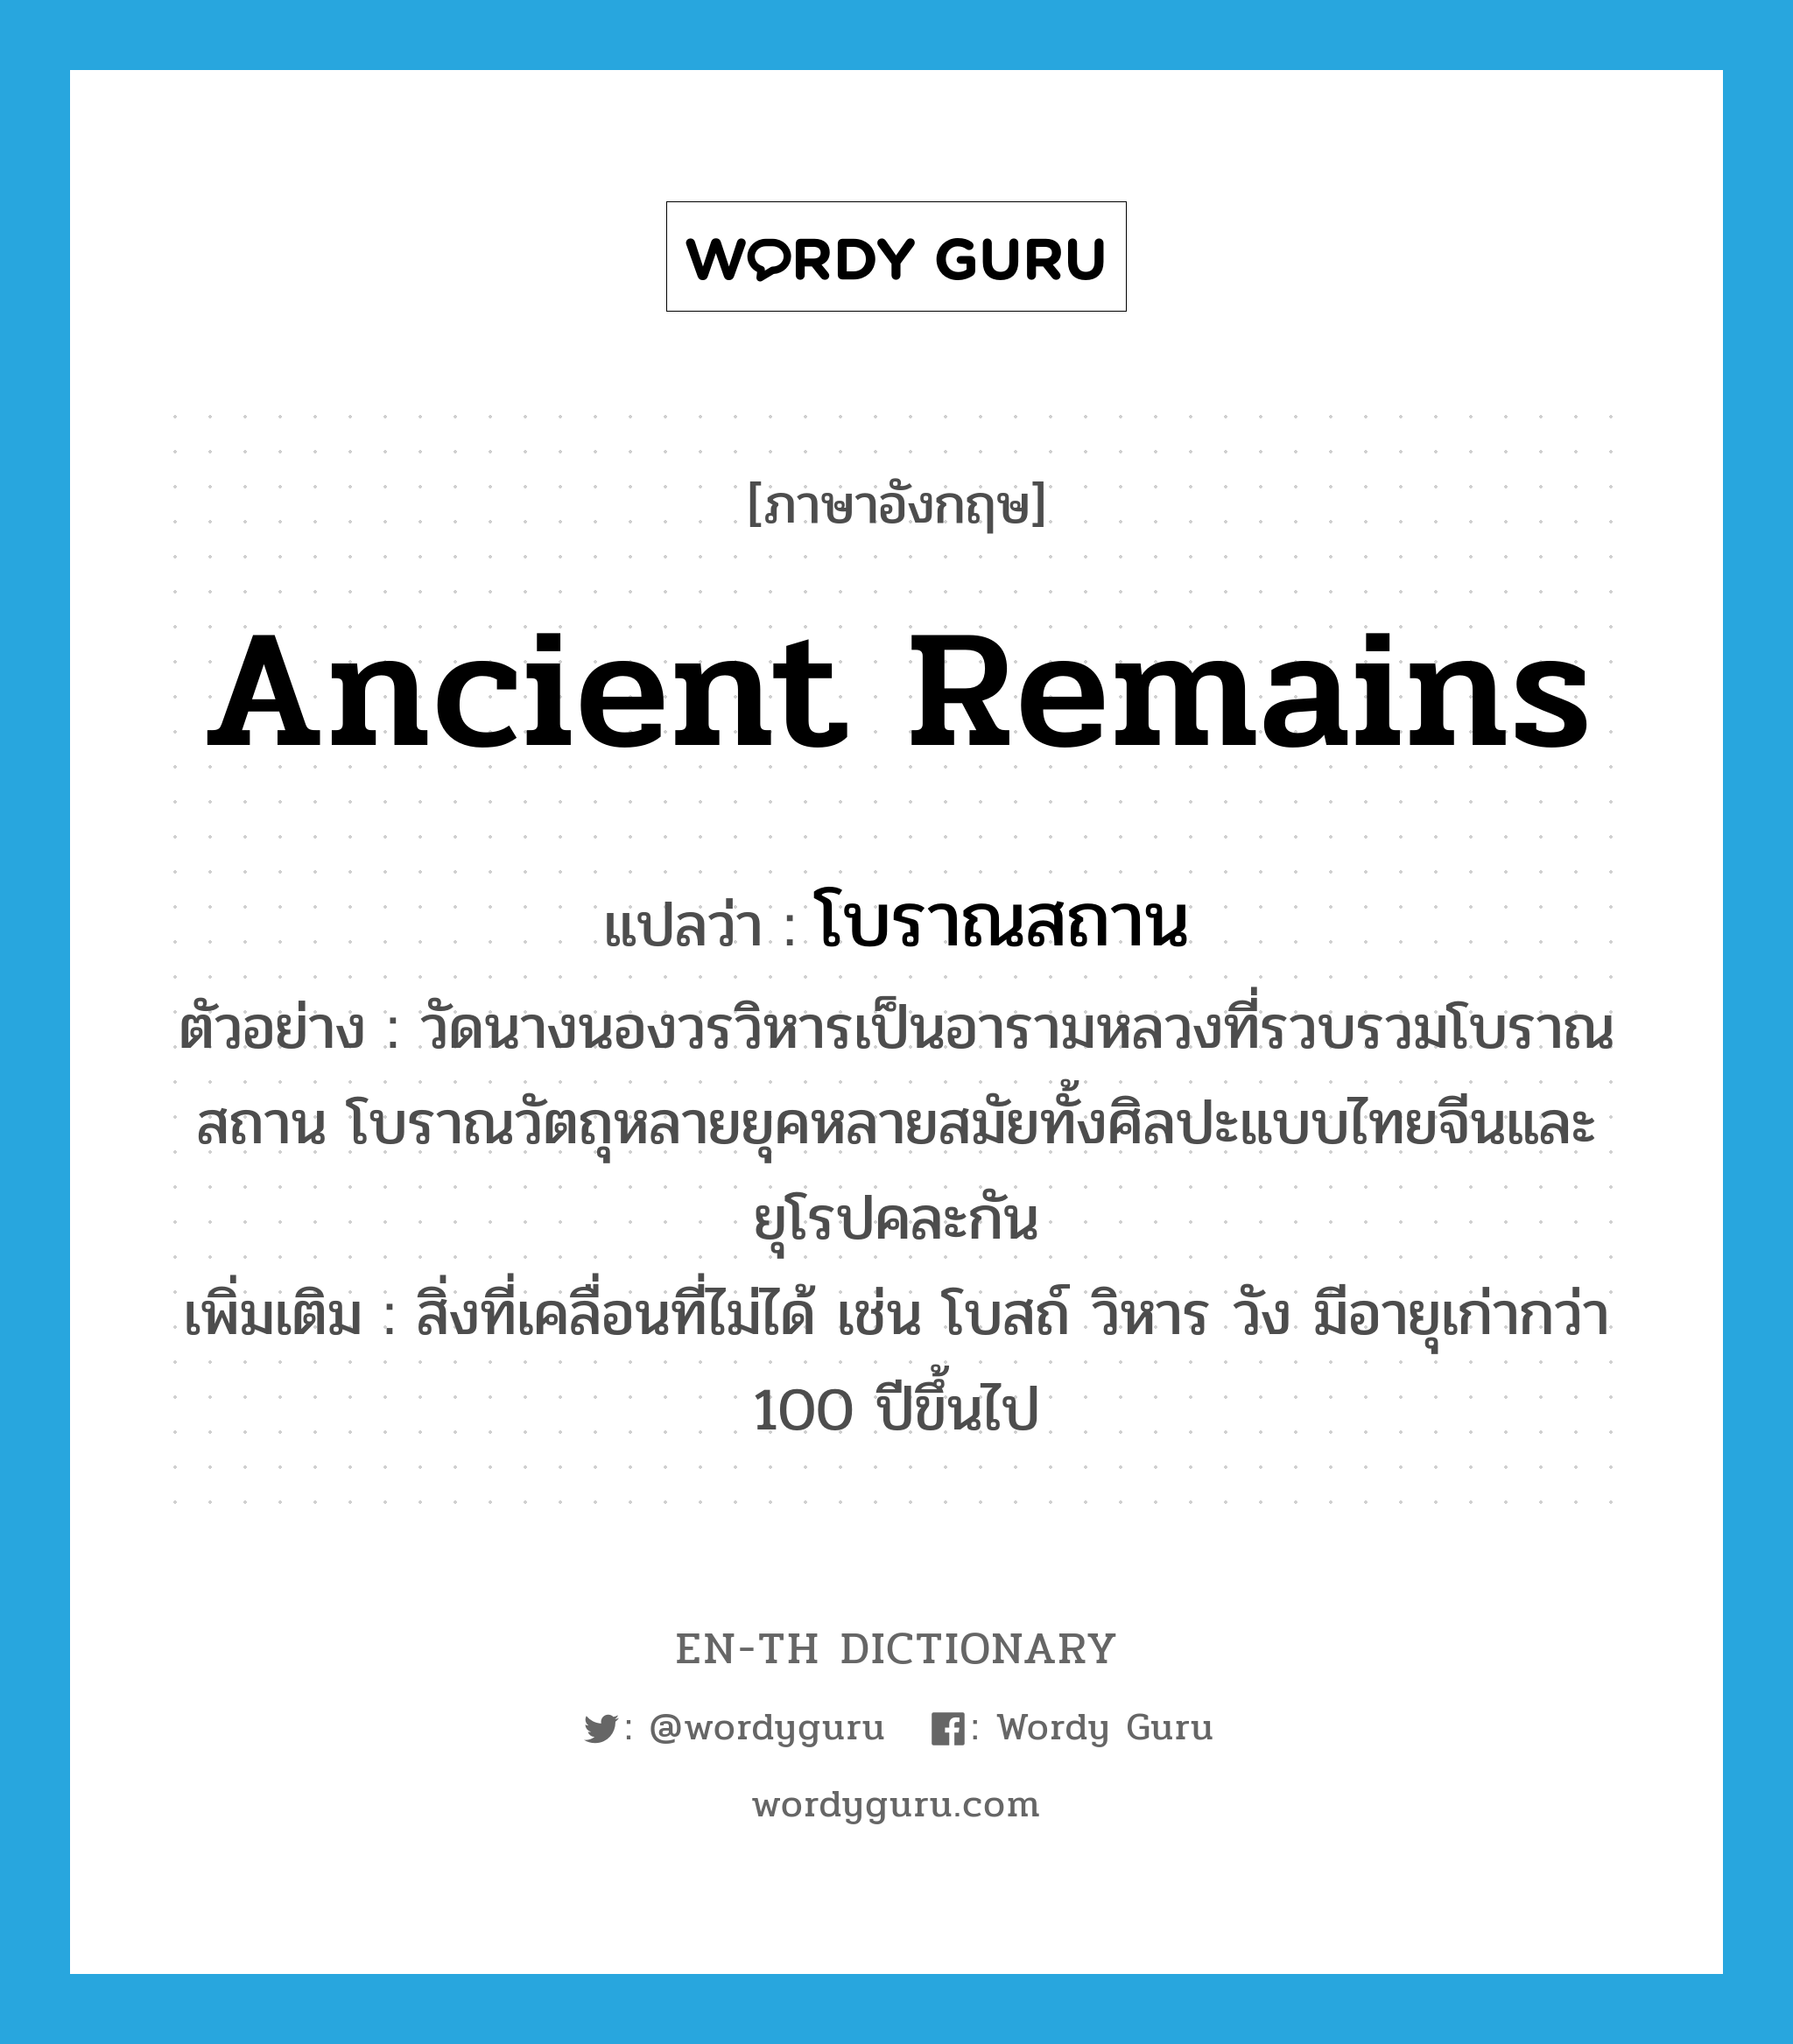 โบราณสถาน ภาษาอังกฤษ?, คำศัพท์ภาษาอังกฤษ โบราณสถาน แปลว่า ancient remains ประเภท N ตัวอย่าง วัดนางนองวรวิหารเป็นอารามหลวงที่รวบรวมโบราณสถาน โบราณวัตถุหลายยุคหลายสมัยทั้งศิลปะแบบไทยจีนและยุโรปคละกัน เพิ่มเติม สิ่งที่เคลื่อนที่ไม่ได้ เช่น โบสถ์ วิหาร วัง มีอายุเก่ากว่า 100 ปีขึ้นไป หมวด N